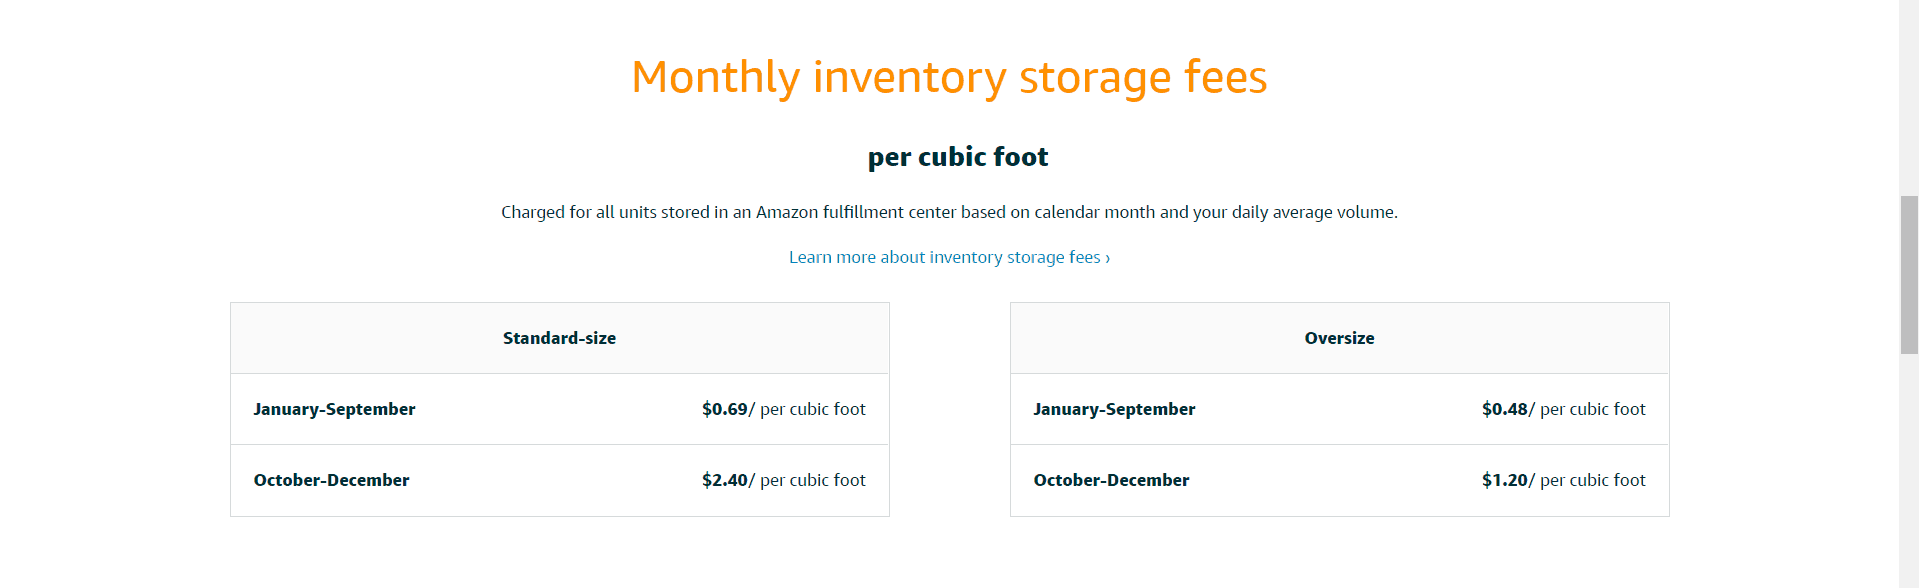 amazon storage fees